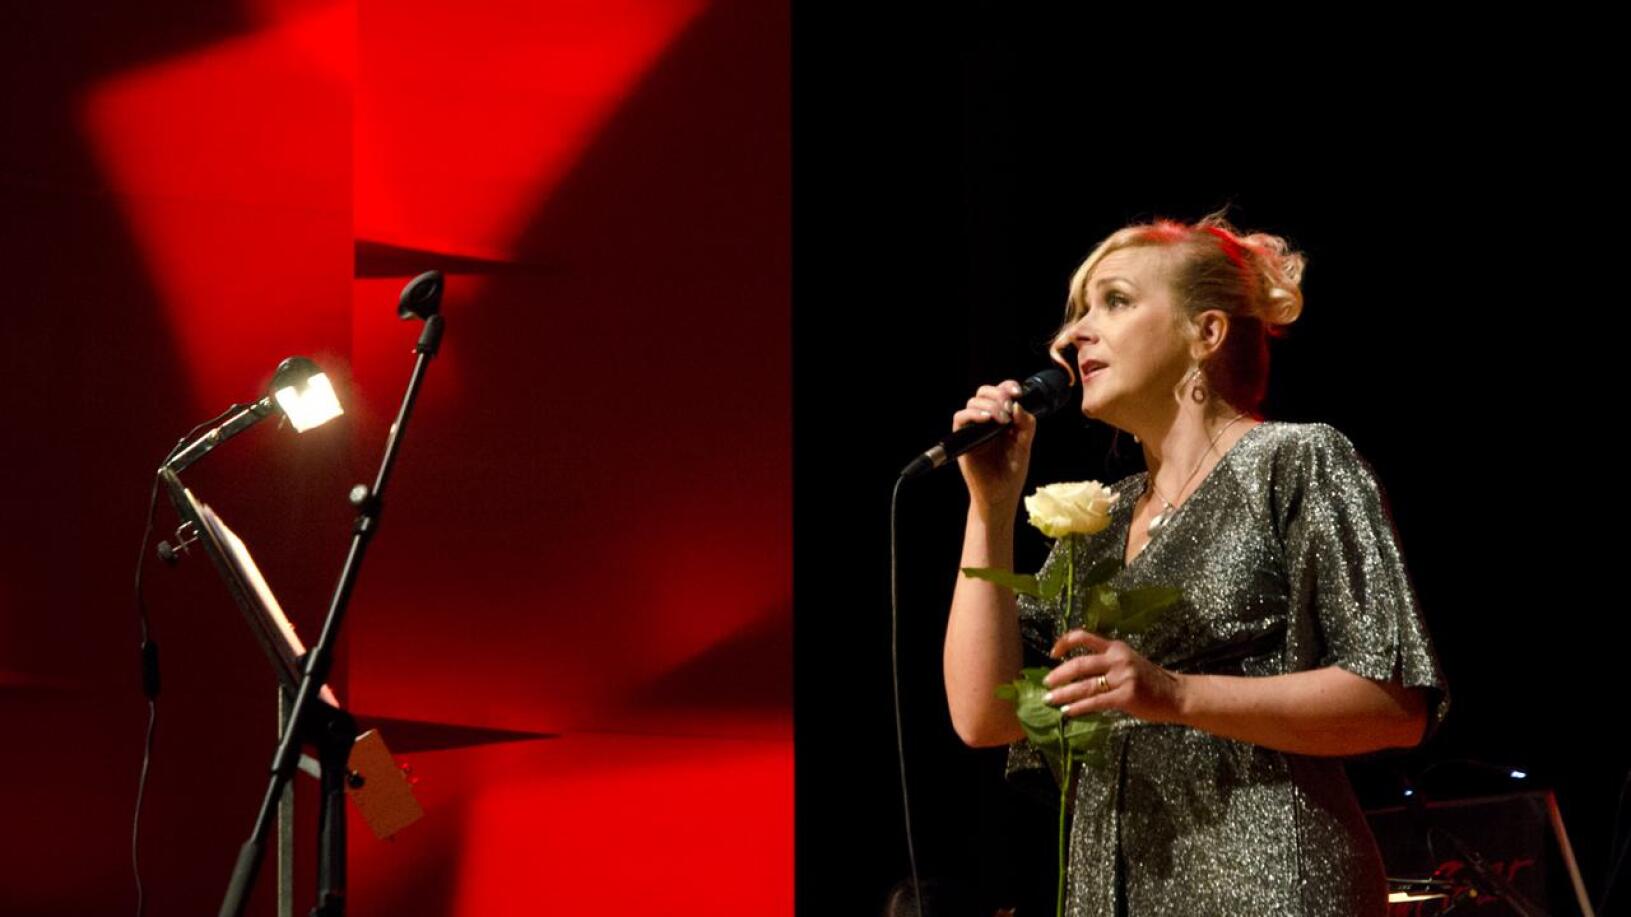 Kati Saarilampi esiintyi syyskuussa Ylivieskan Kulttuurikeskus Akustiikassa pidetyssä Kalajokilaakson 95-vuotisjuhlakonsertissa, jonka musiikista vastasi viihdeorkesteri Selvät Sävelet.